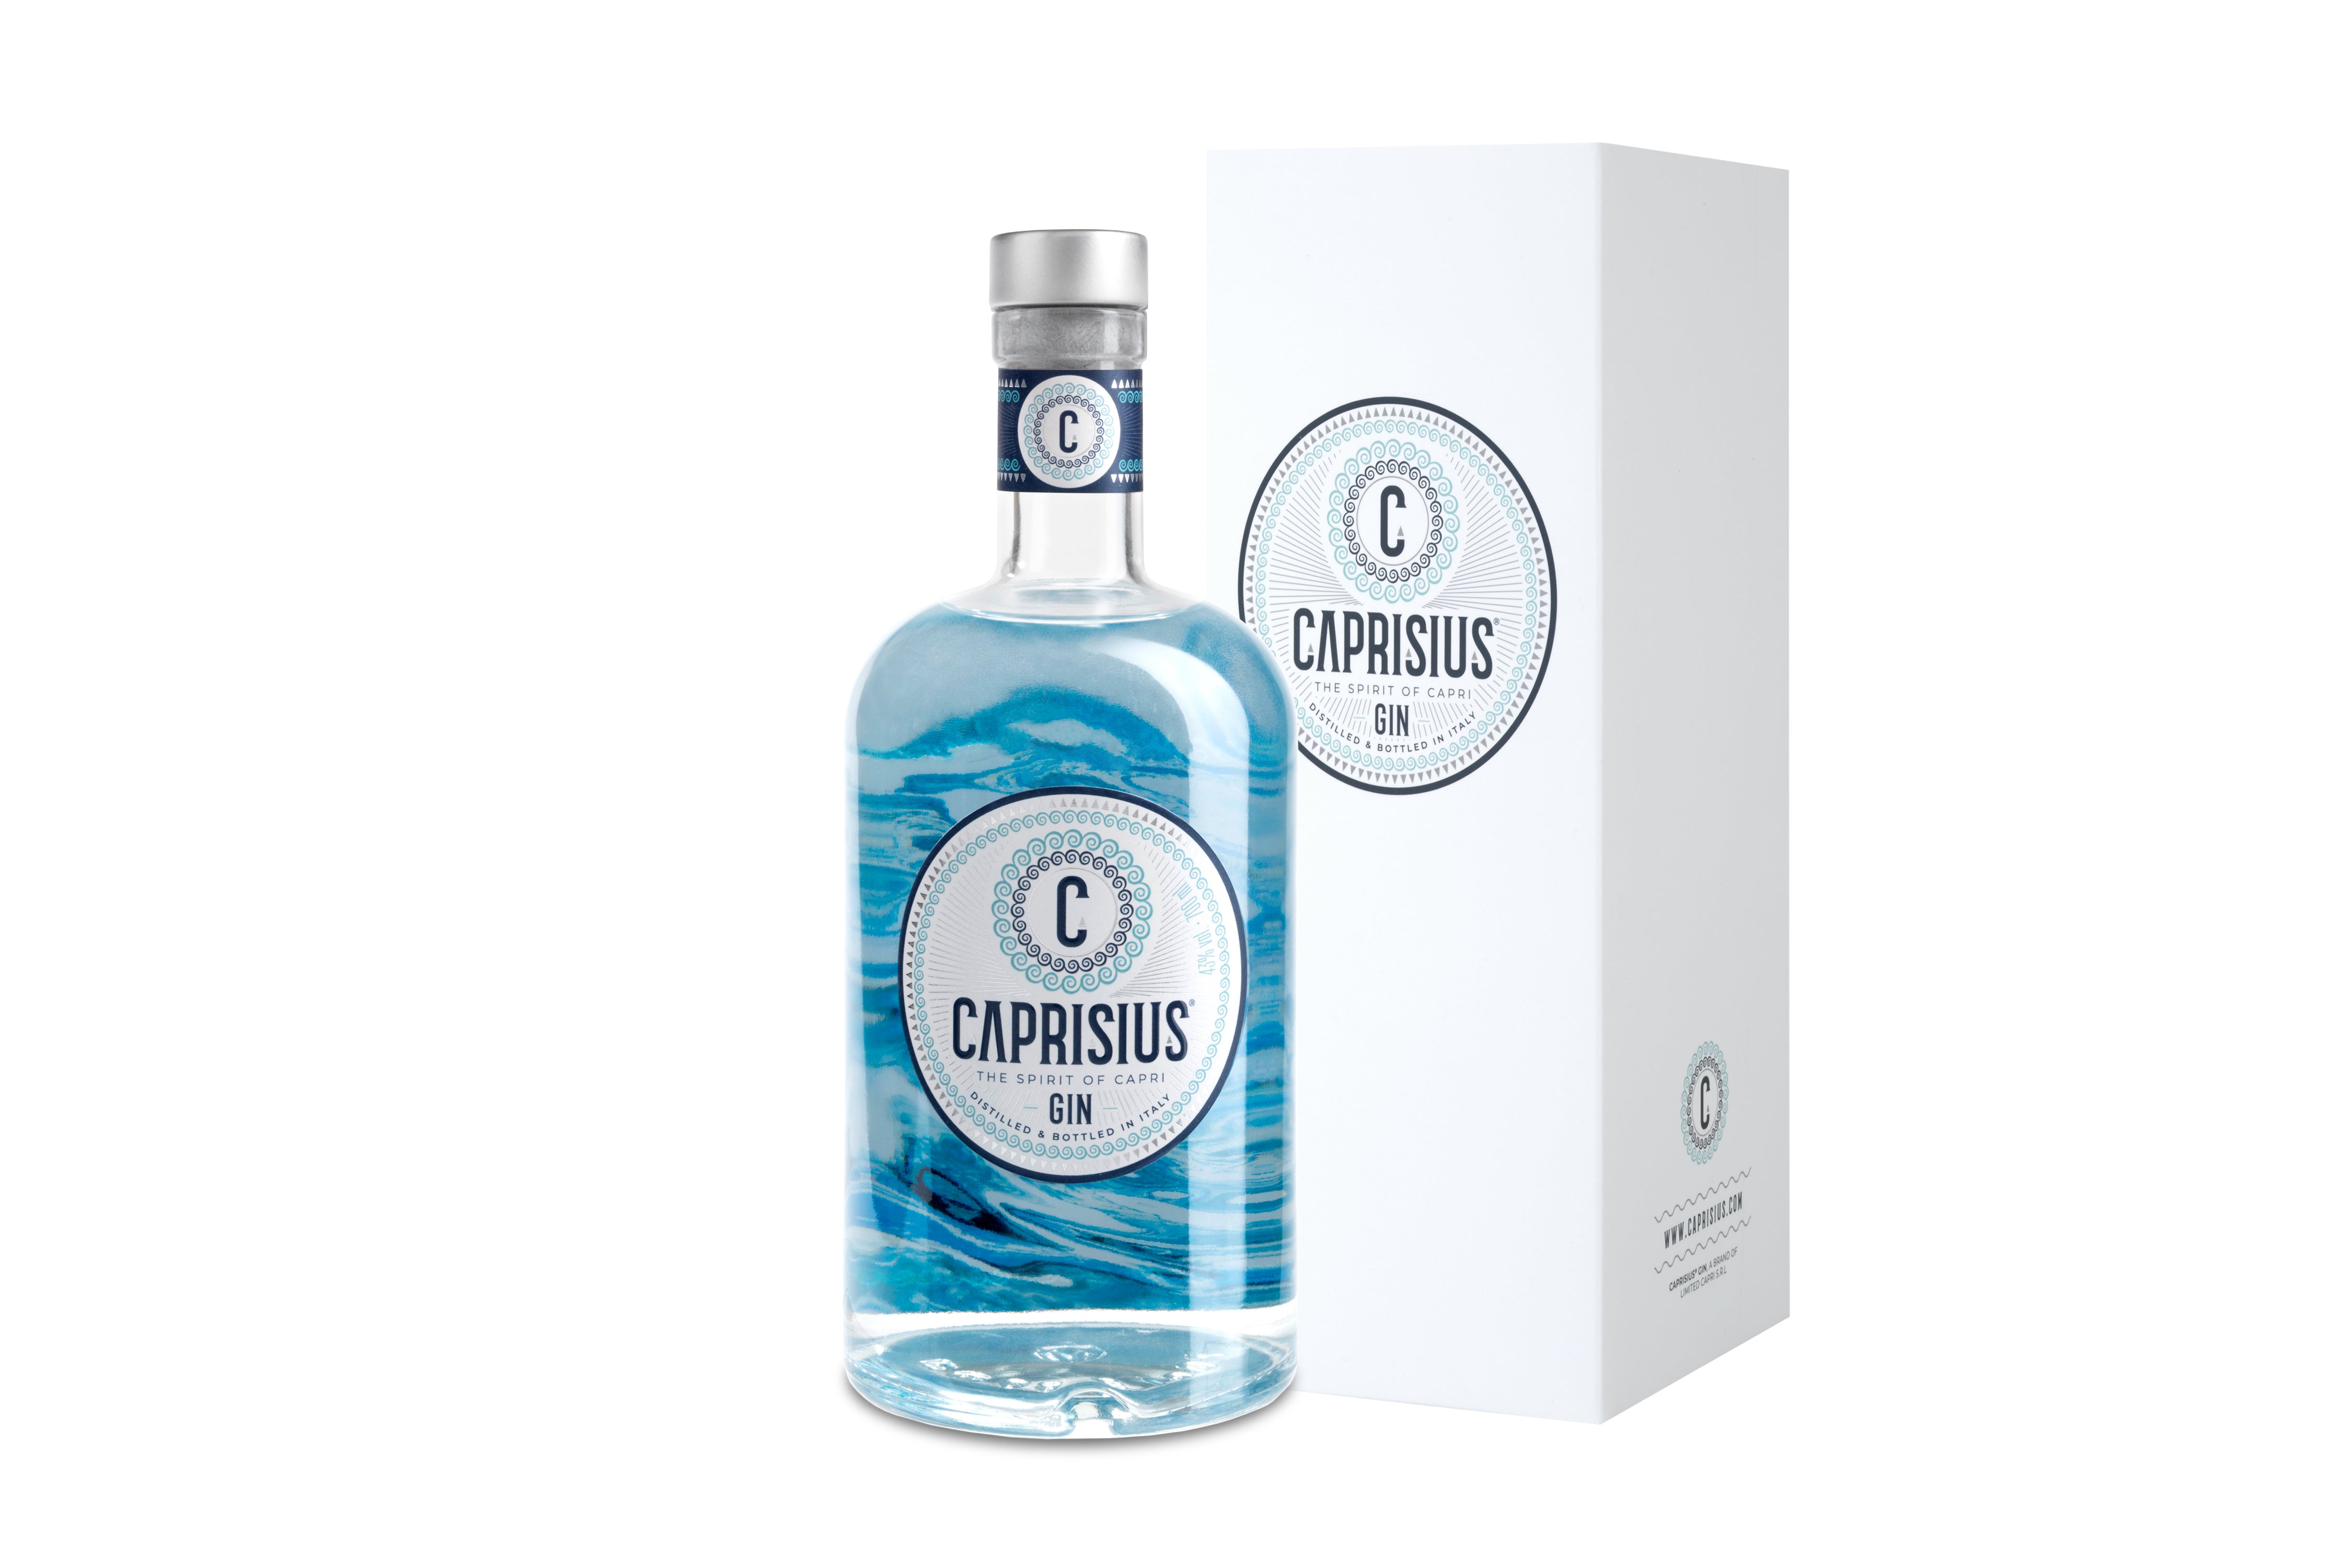 Caprisius gin